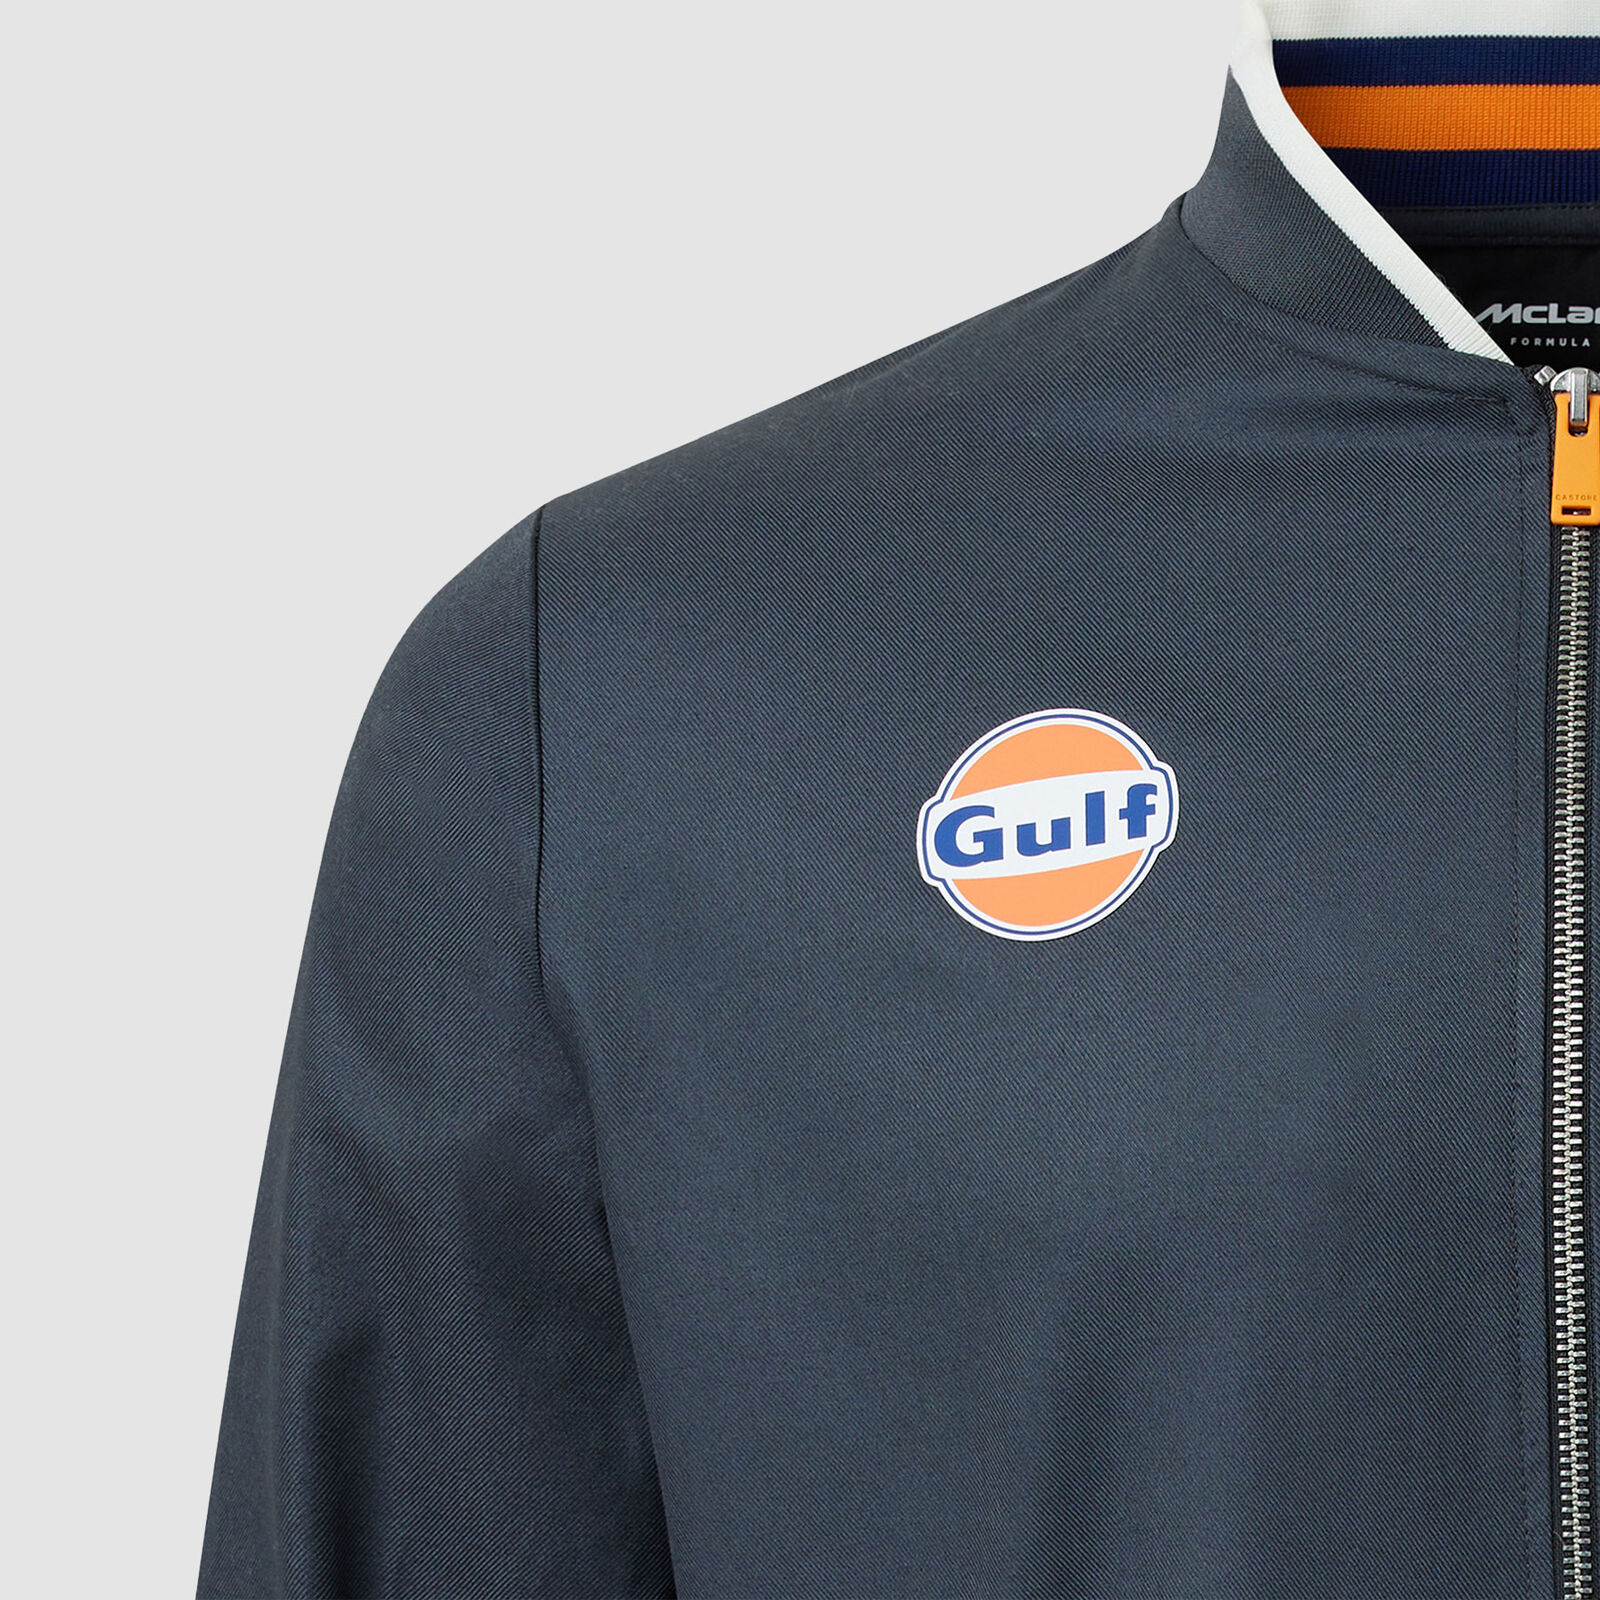 McLaren F1 Gulf Bomber Jacket Official F1™ Merchandise – Fueler Store ...